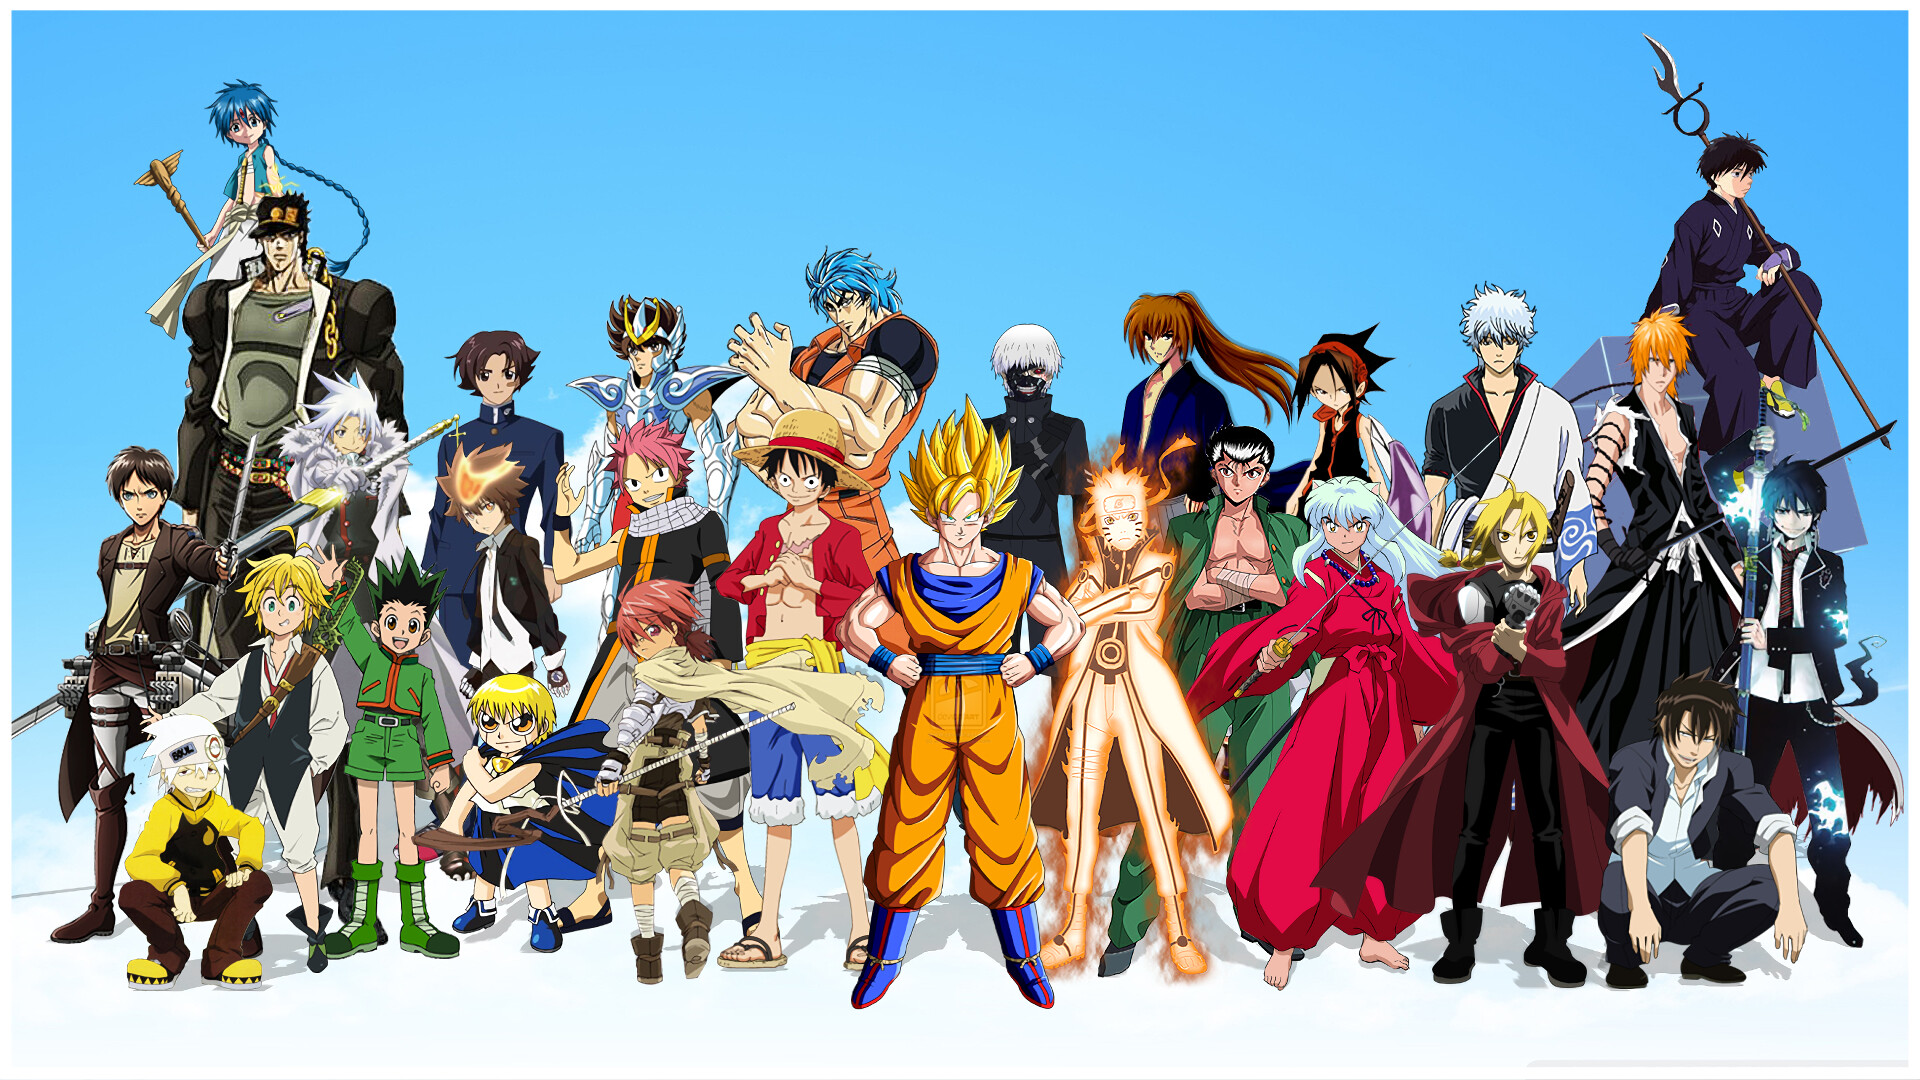 Ken Kaneki, Ichigo Kurosaki, Goku, Anime wallpapers, 1920x1080 Full HD Desktop